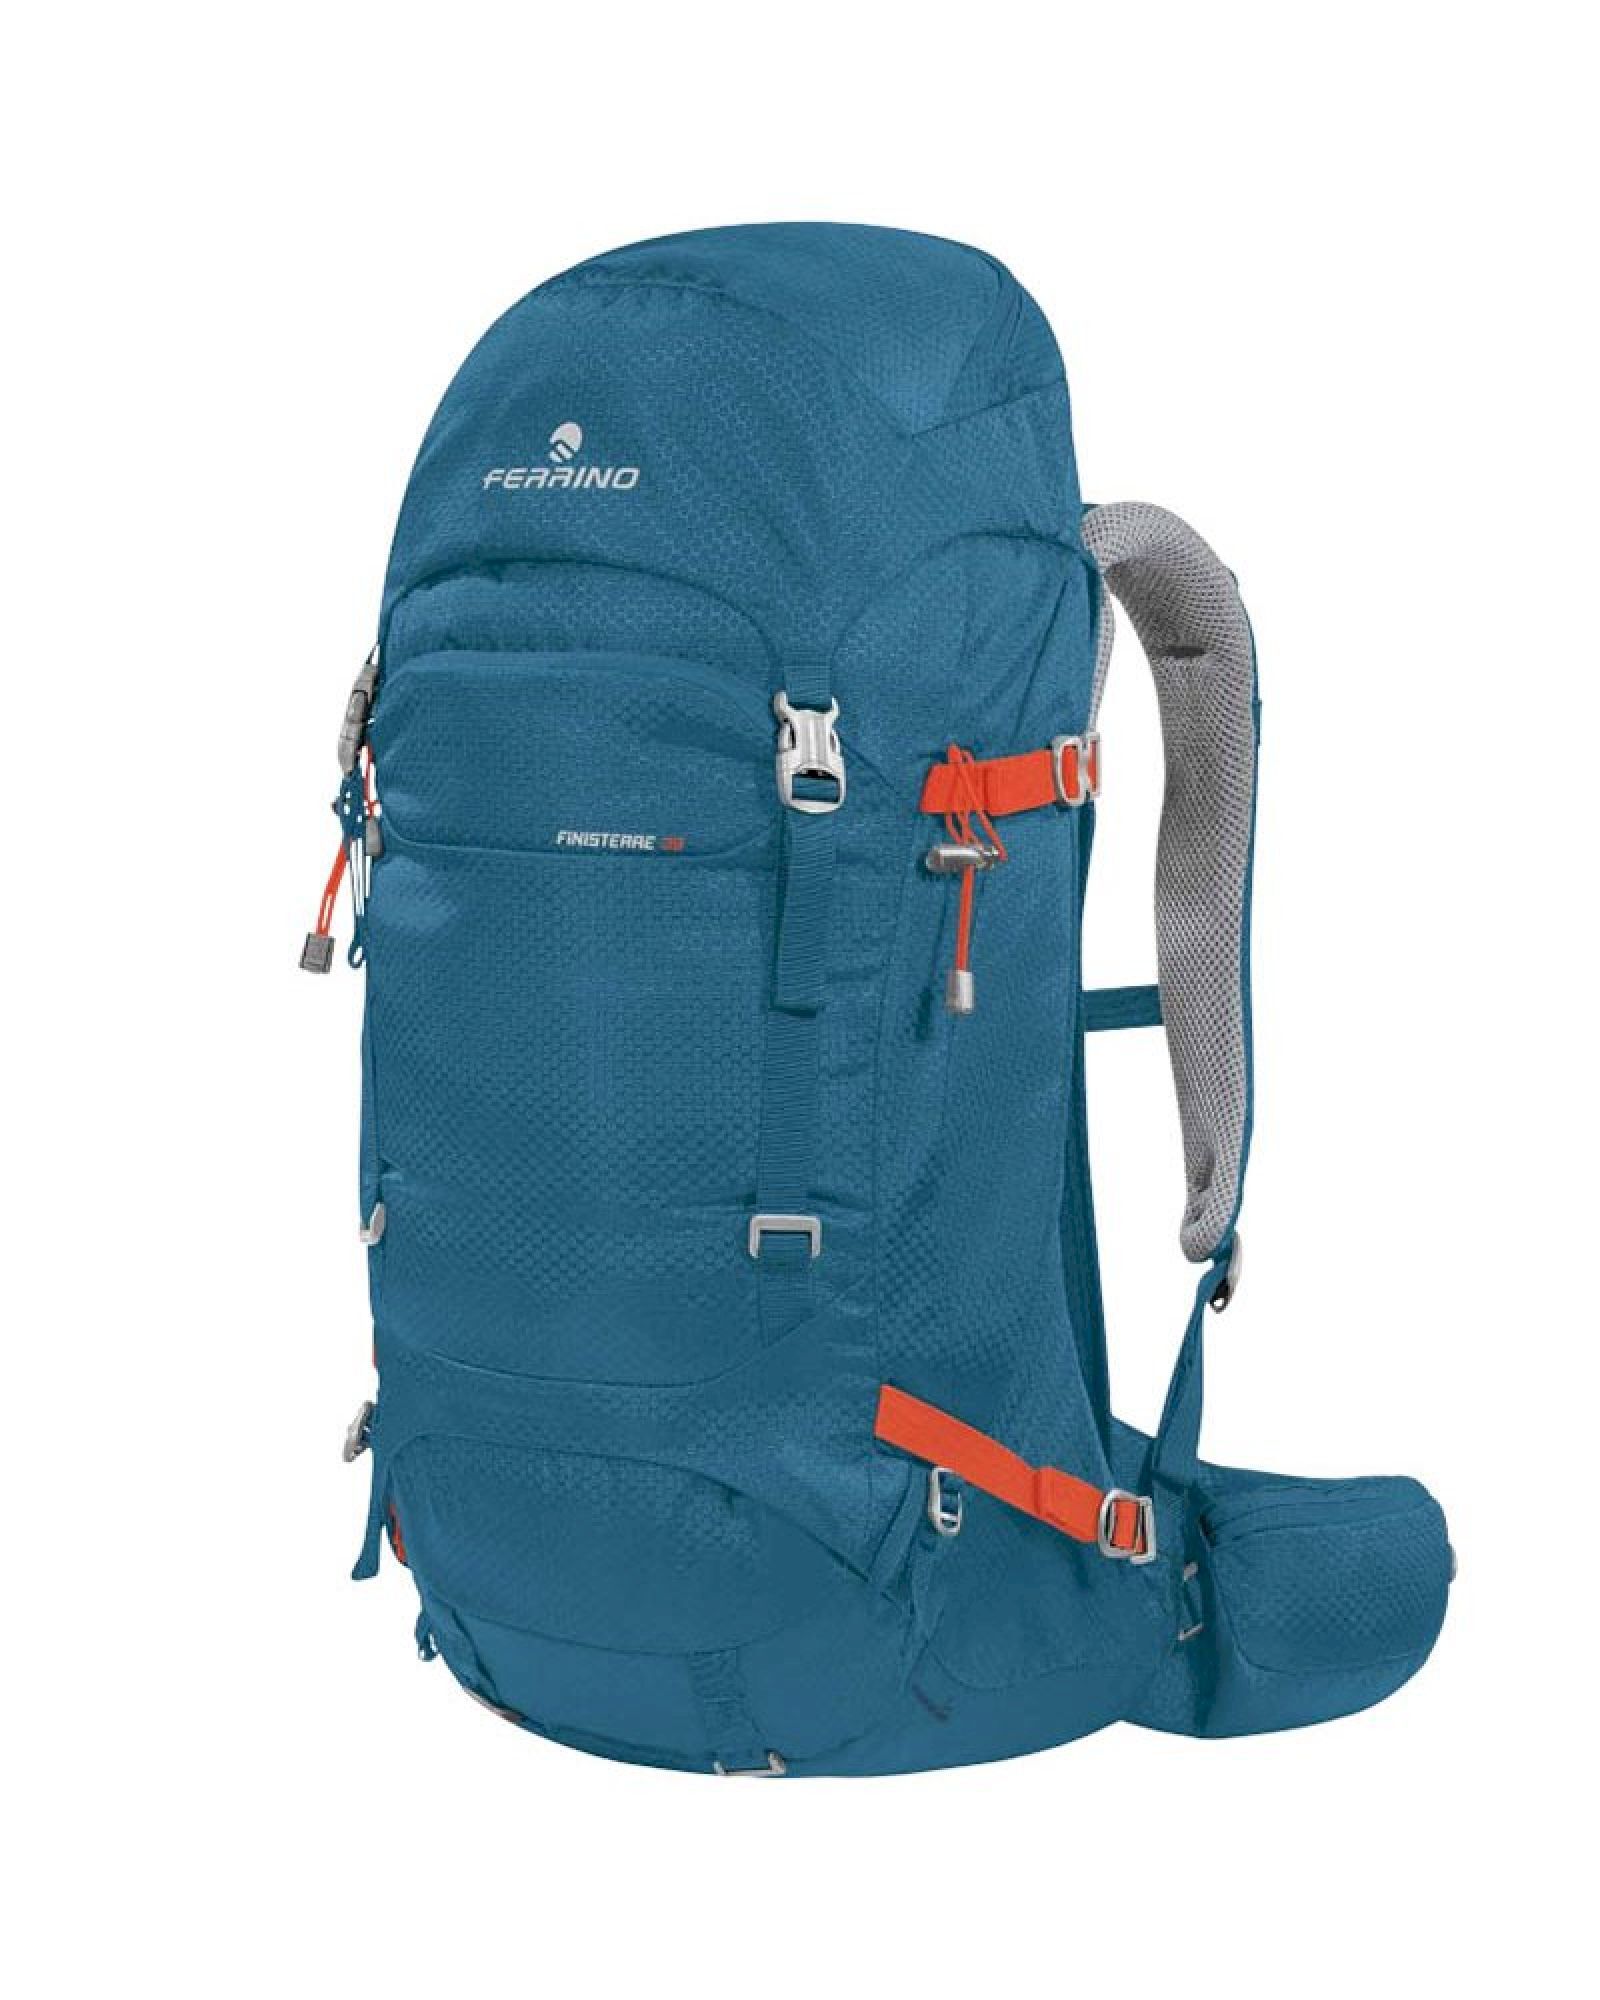 Ferrino Finisterre 38 - Hiking backpack